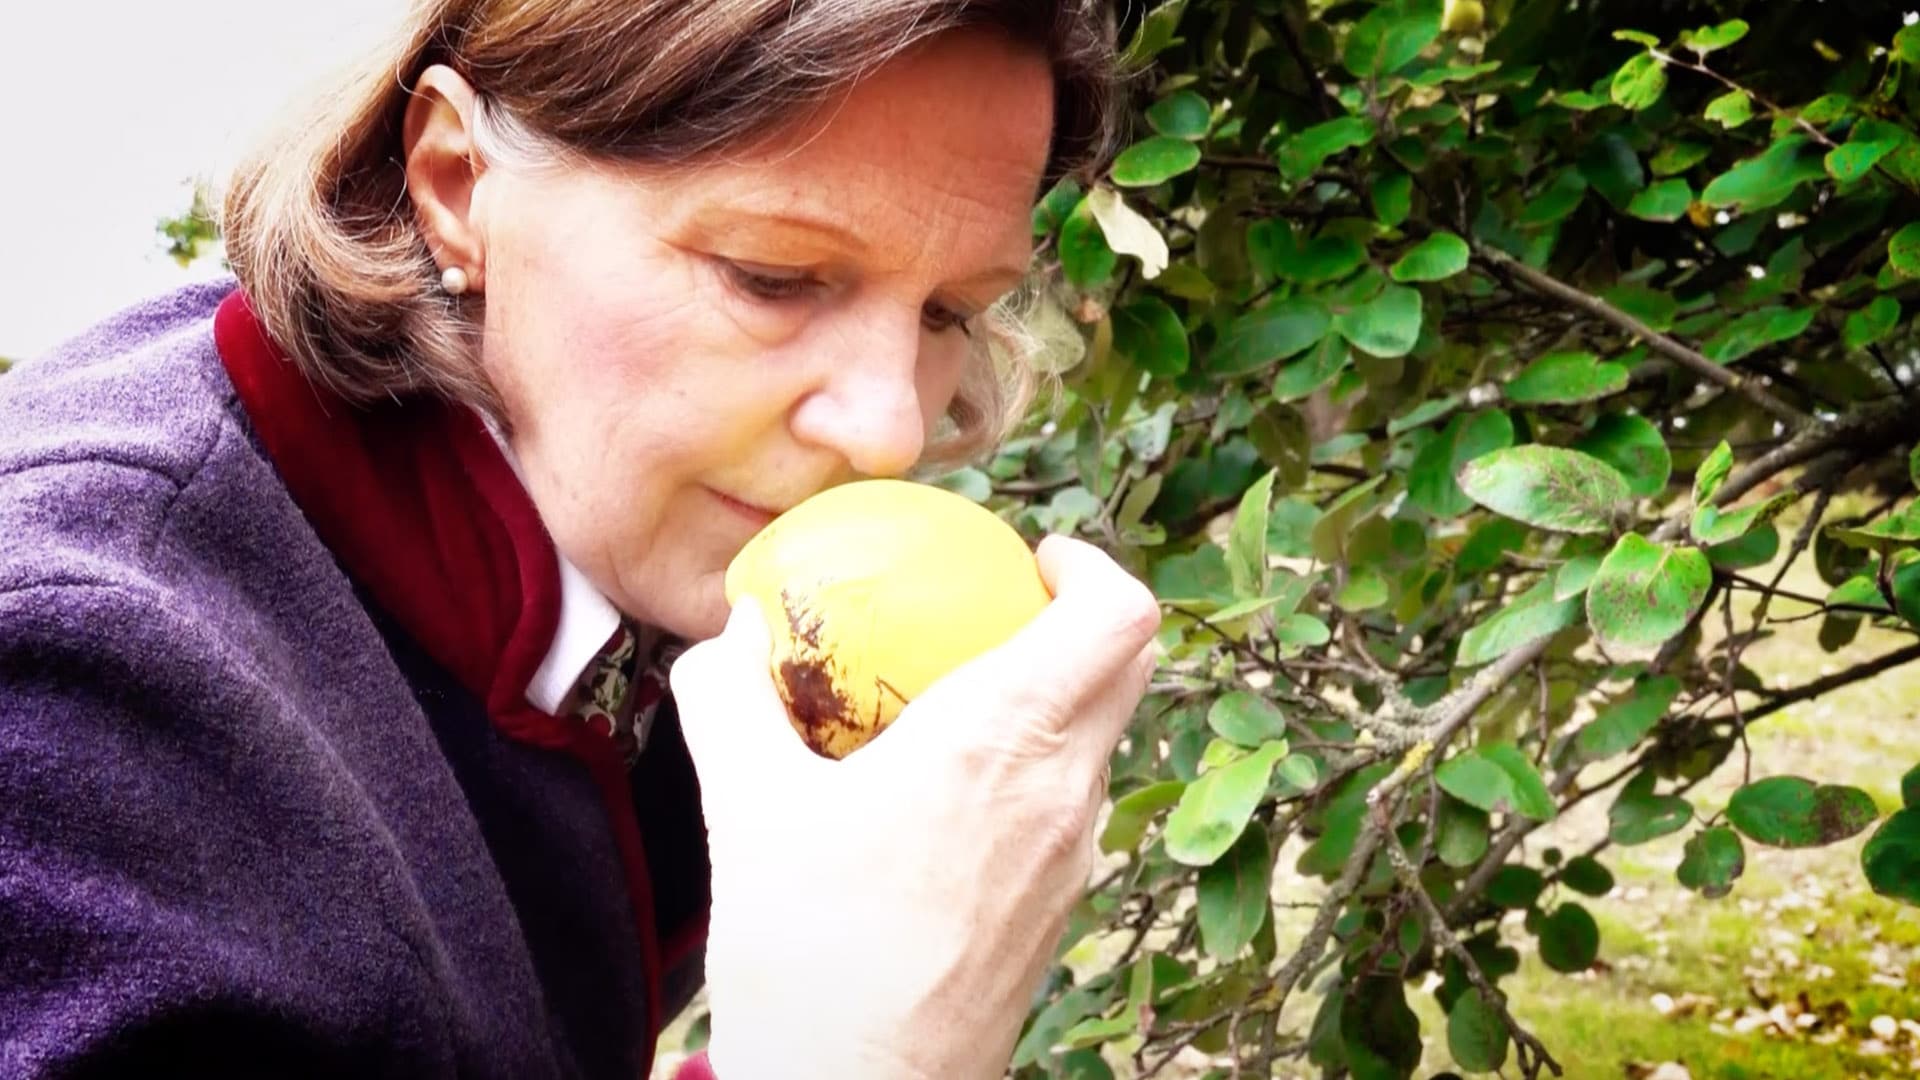 Daisy Gräfin von Arnim ist die „Apfelgräfin“ in der Uckermark